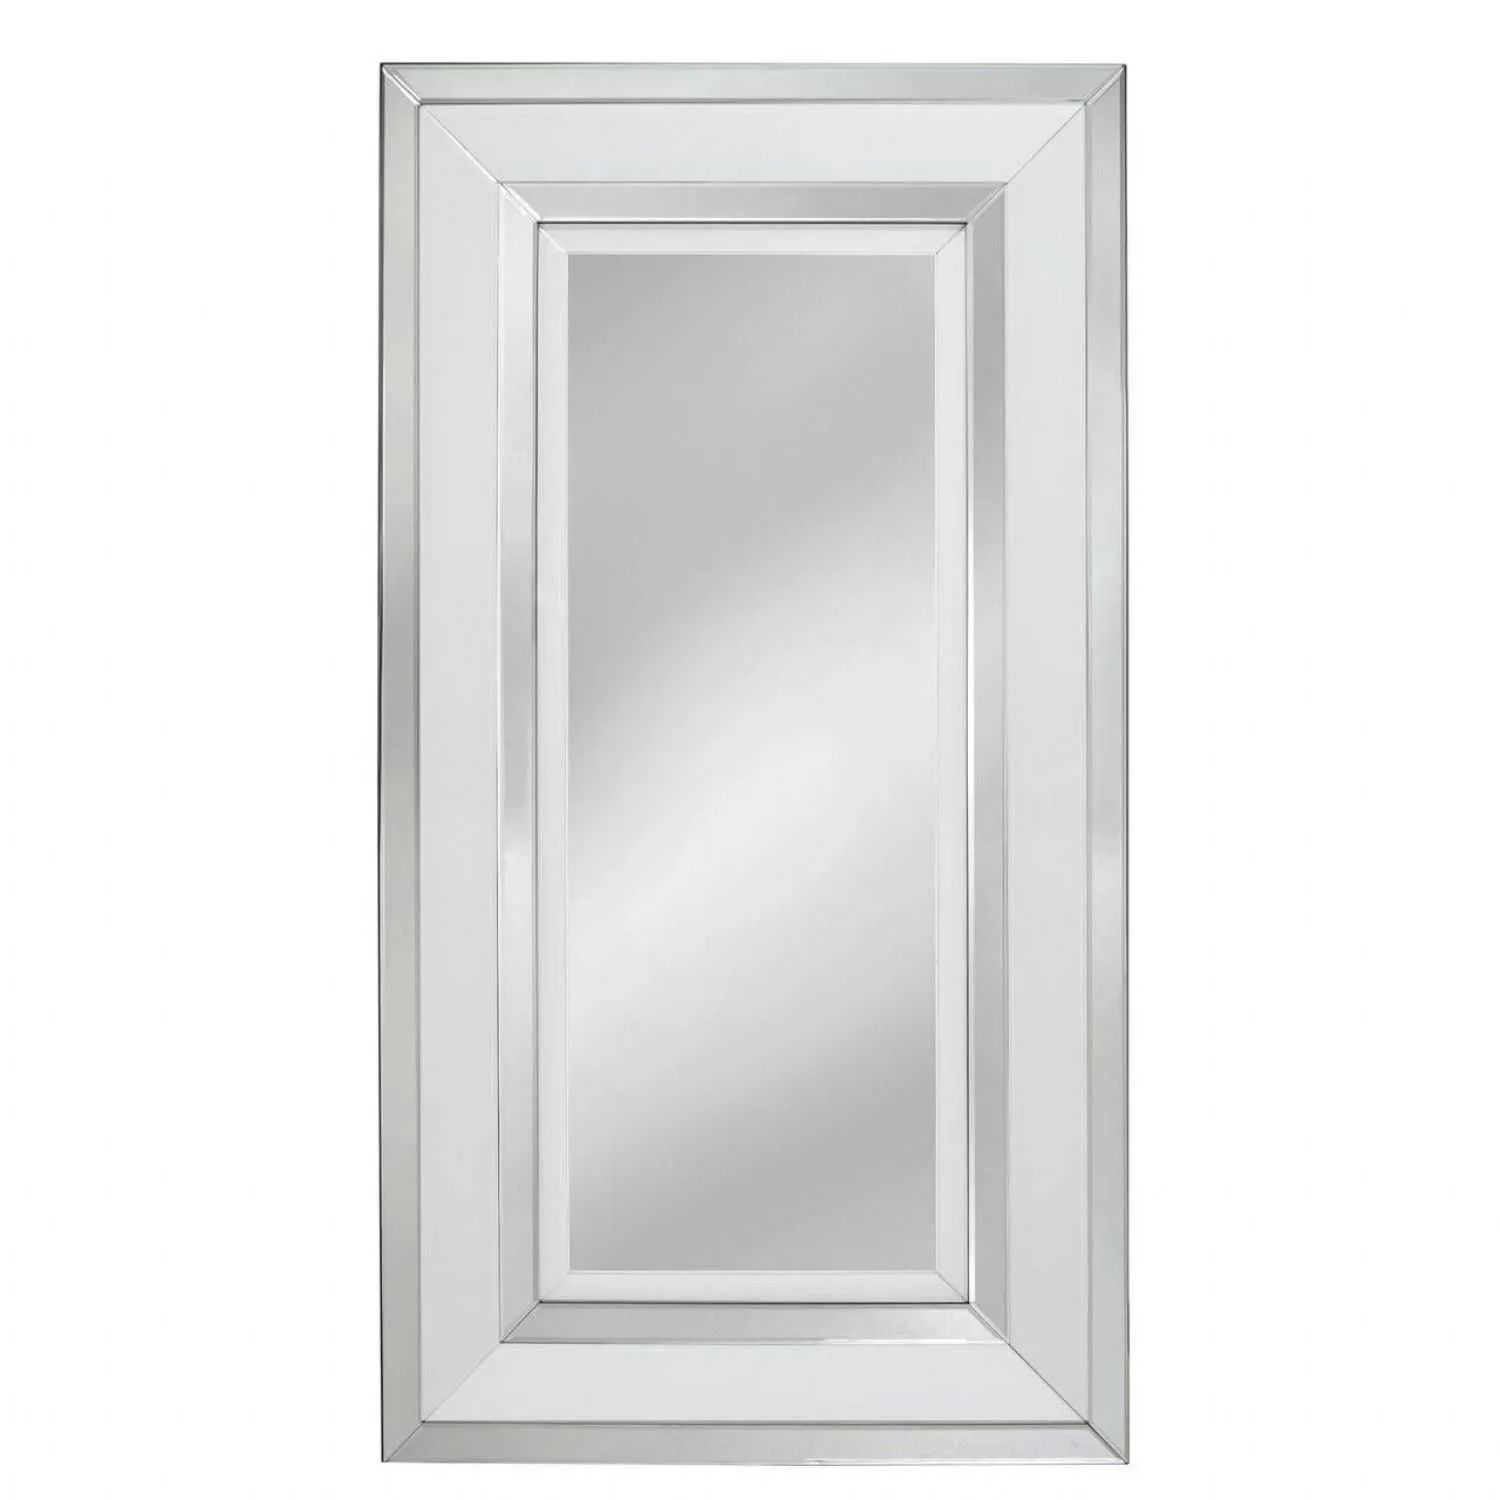 Mitcham Medium Wall Mirror White clear